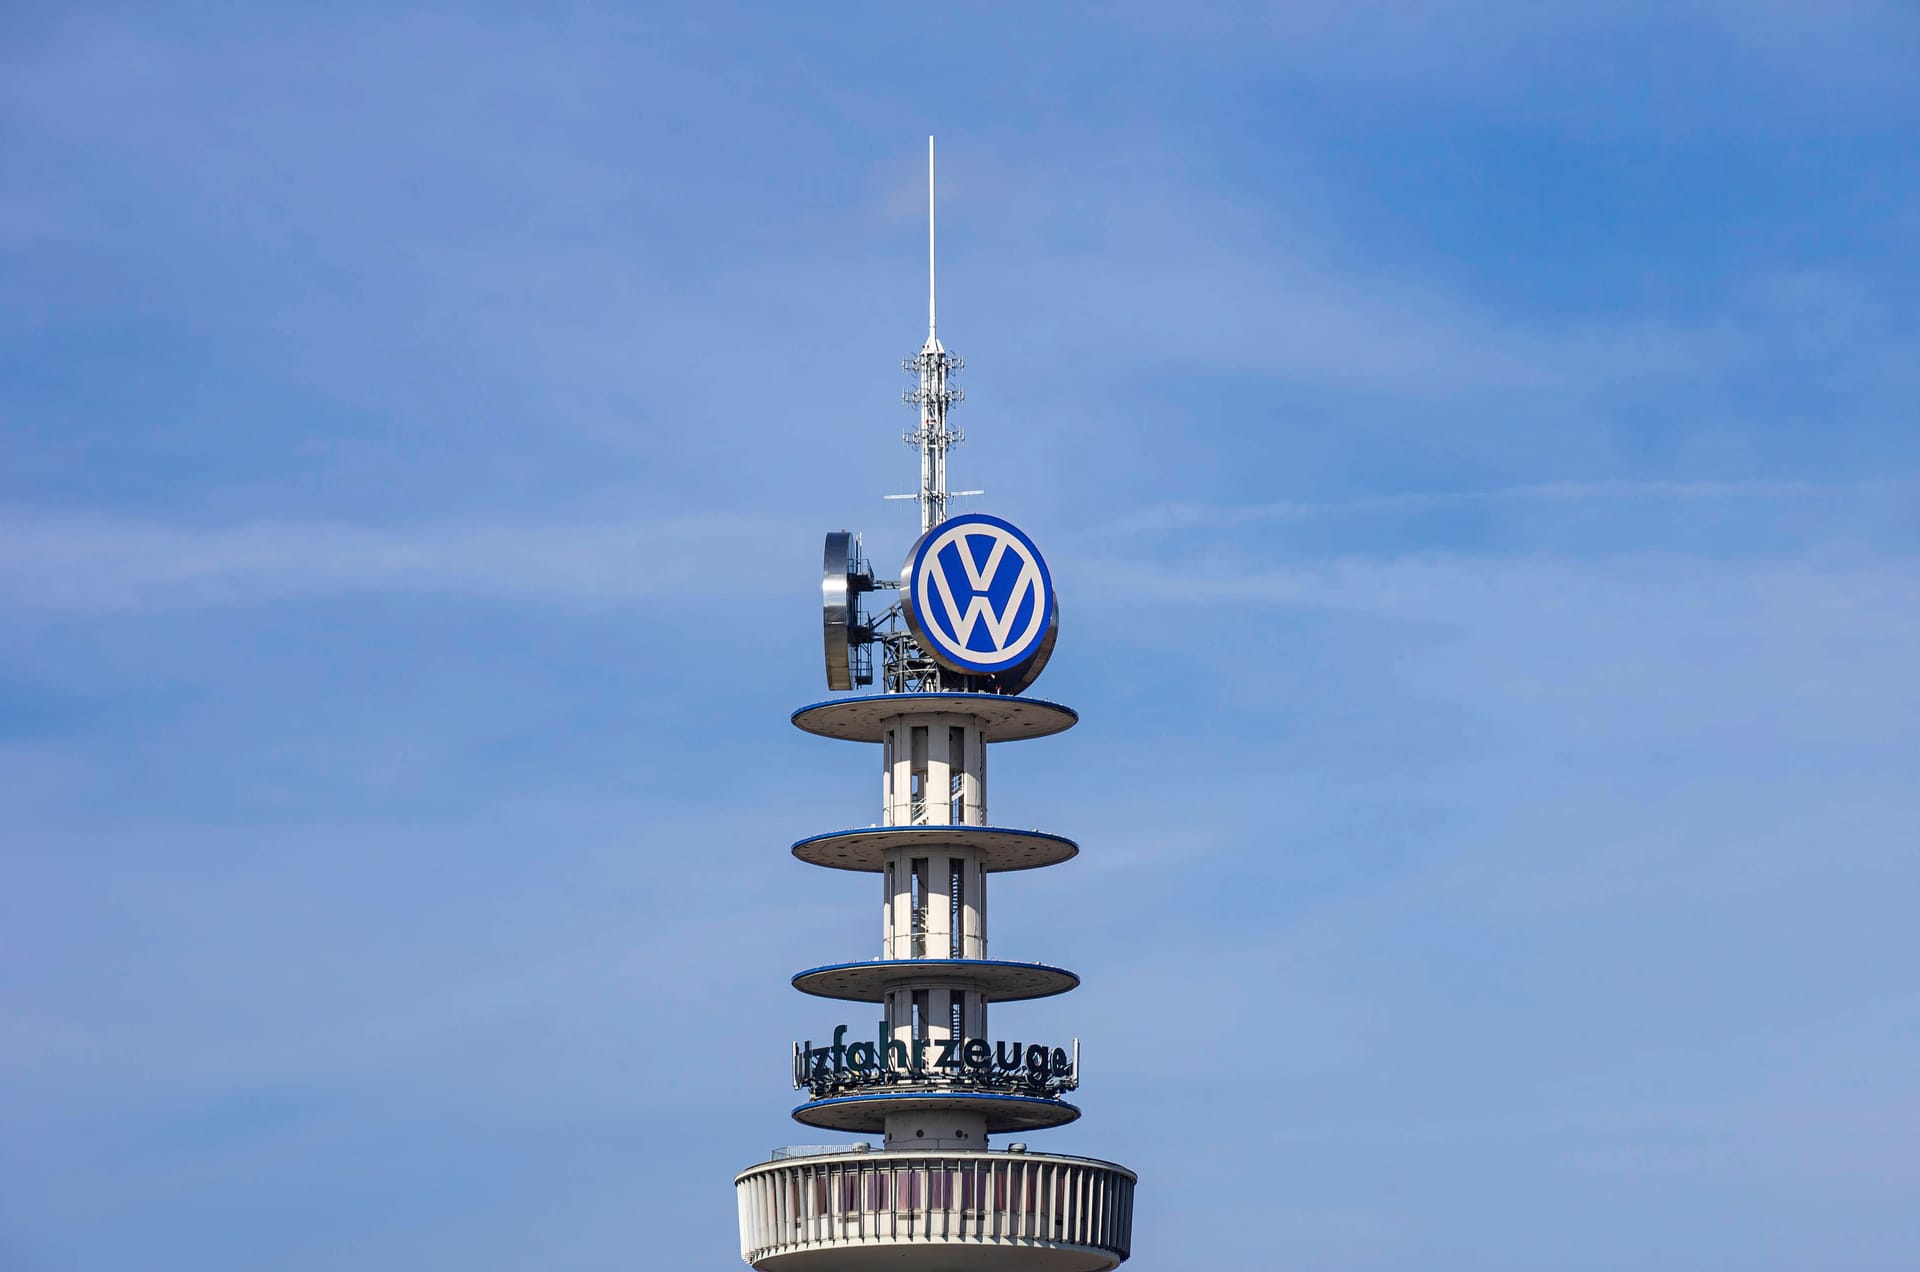 Der VW-Tower am ZOB wird auch Telemoritz genannt.